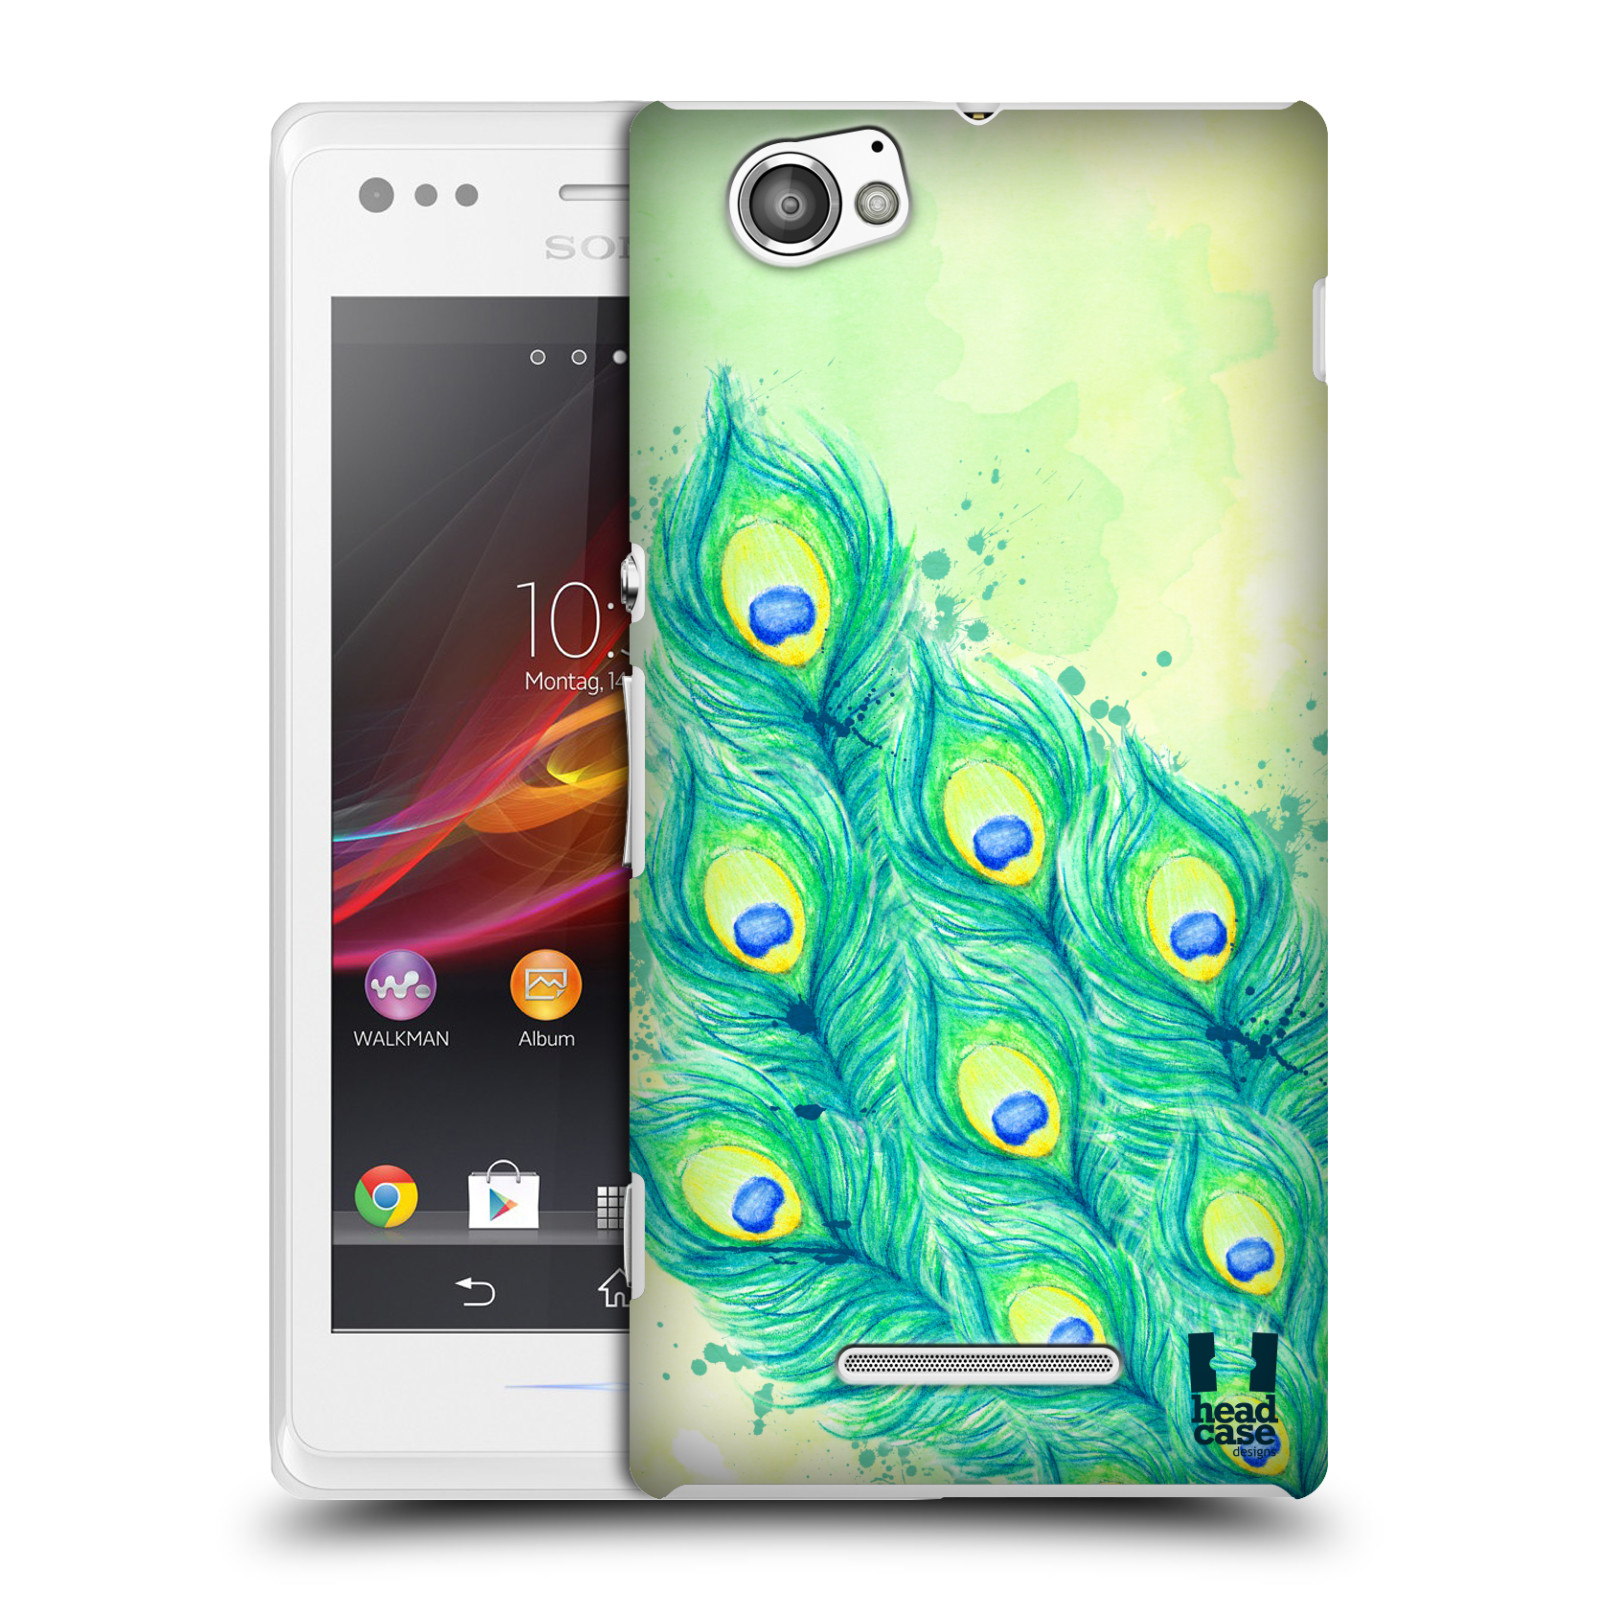 HEAD CASE plastový obal na mobil Sony Xperia M vzor Paví pírka barevná MODRÁ A ZELENÁ